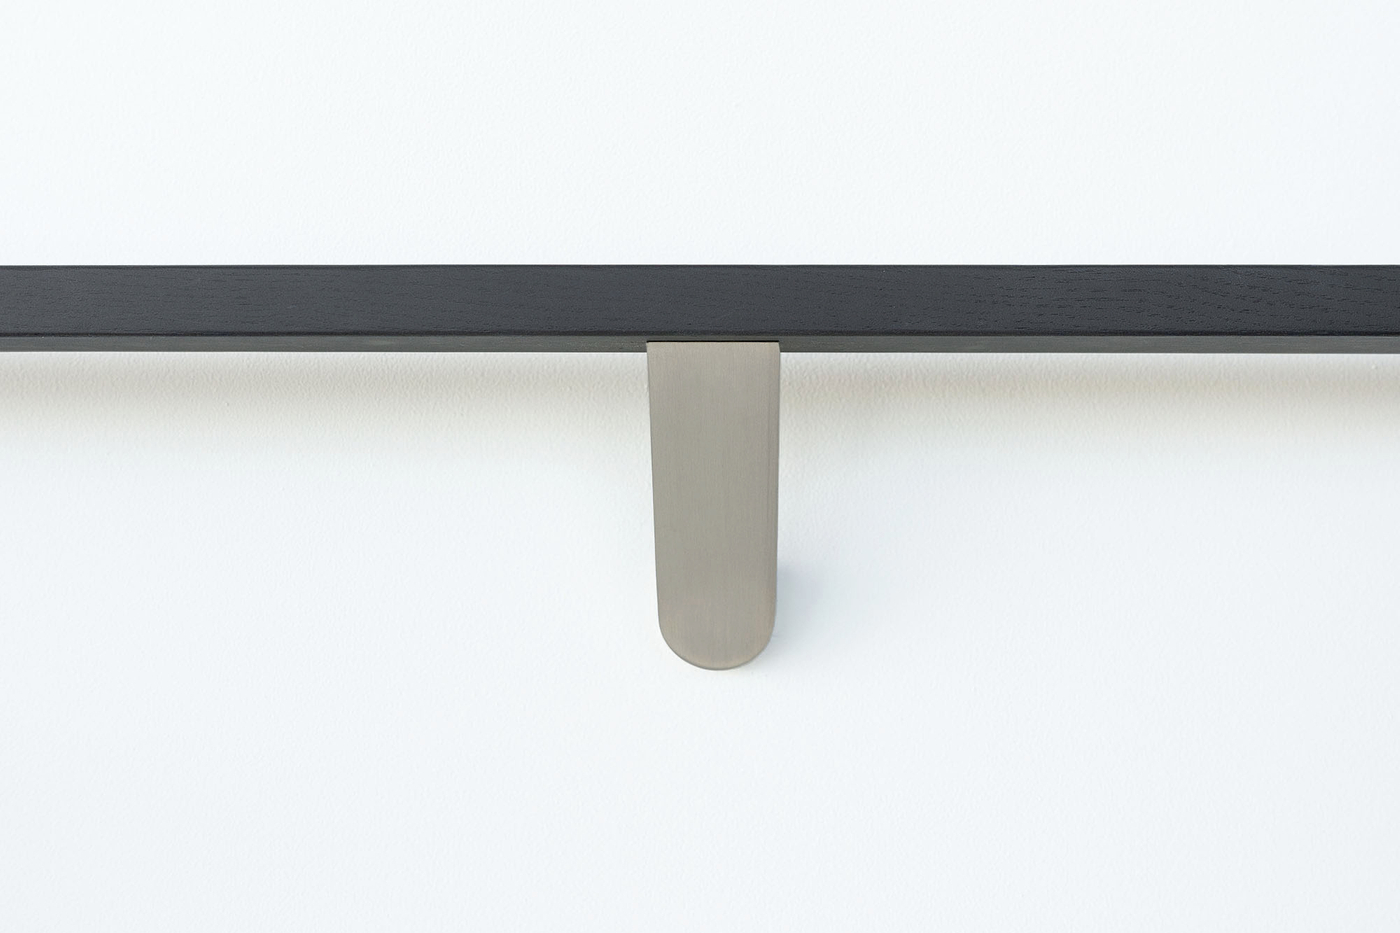 Modern-brushed-stainless-steel-handrail-bracket